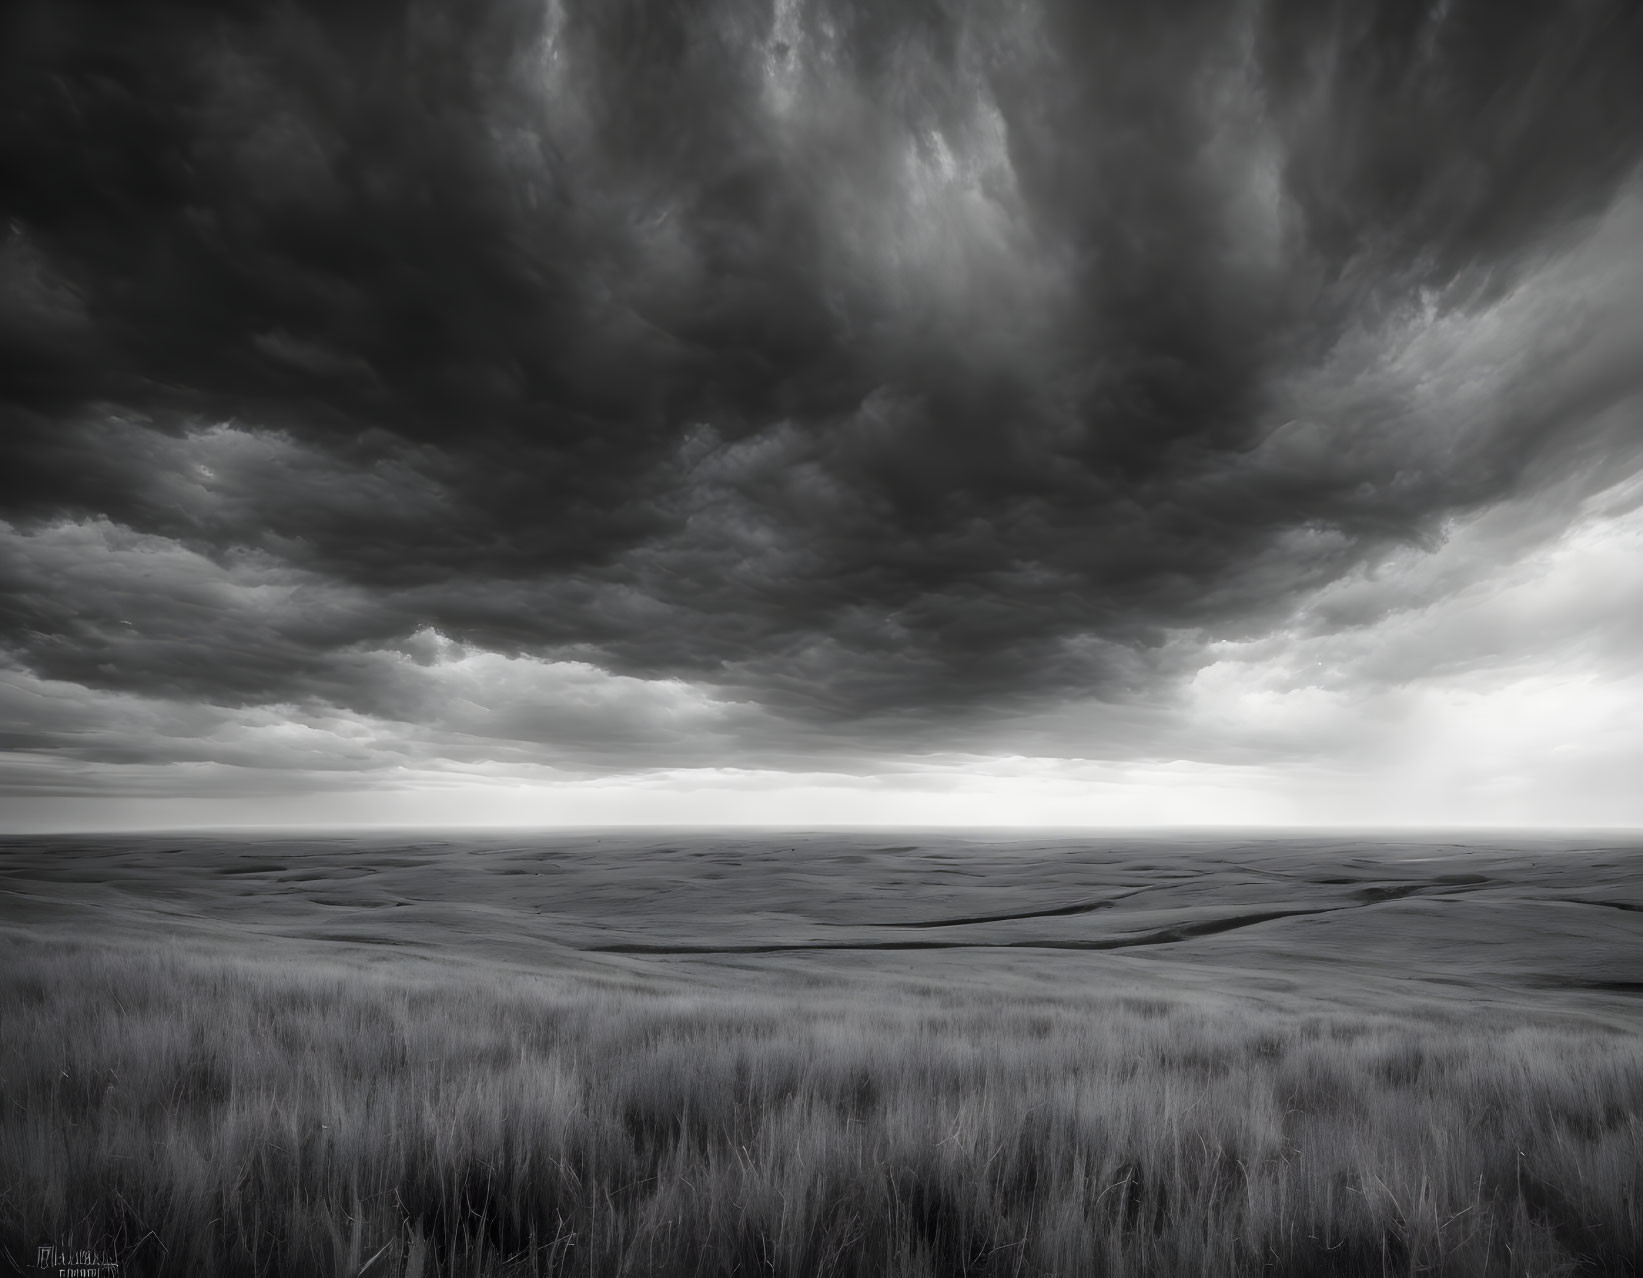 Monochrome landscape: vast grasslands under stormy sky